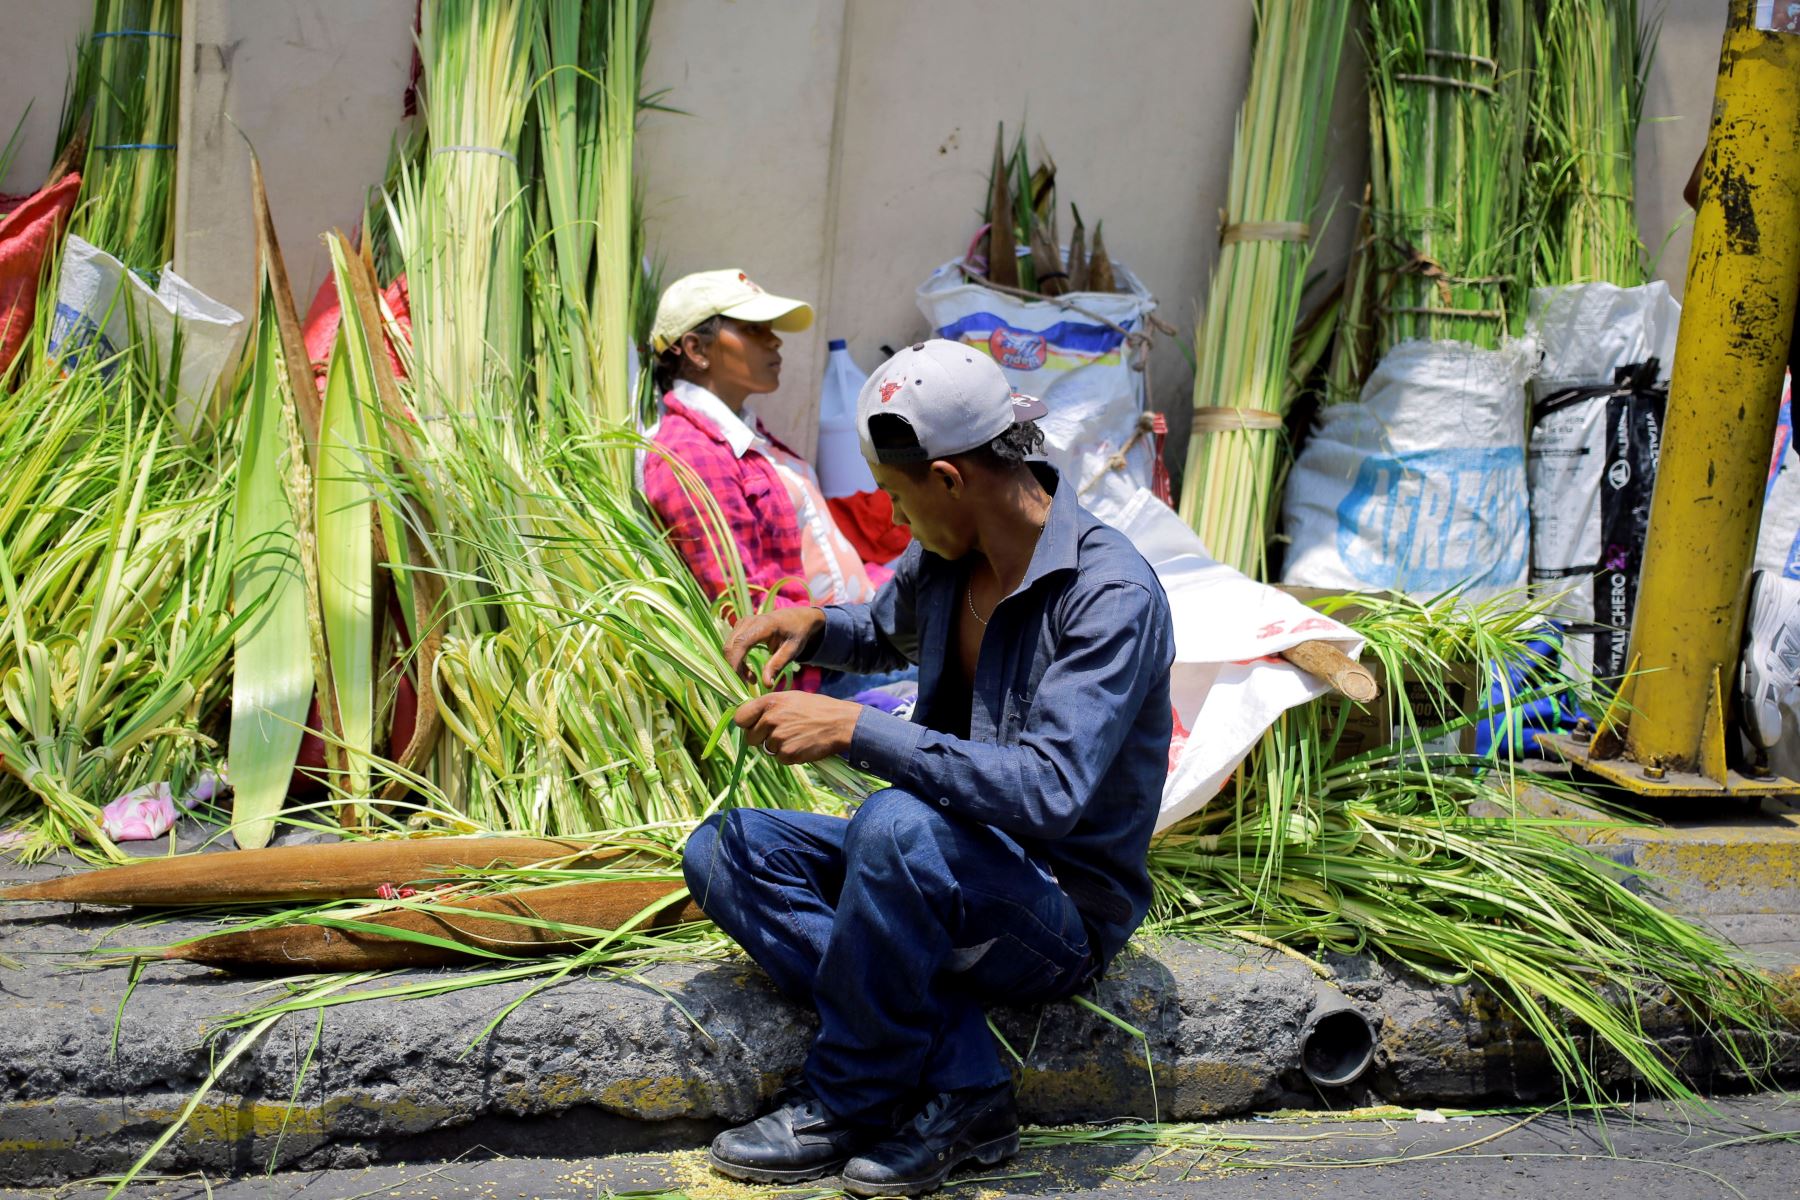 Campesinos venden ramos de palma para el tradicional Domingo de Ramos de la Semana Santa e en la Plaza Central de Tegucigalpa - Honduras.Foto:EFE